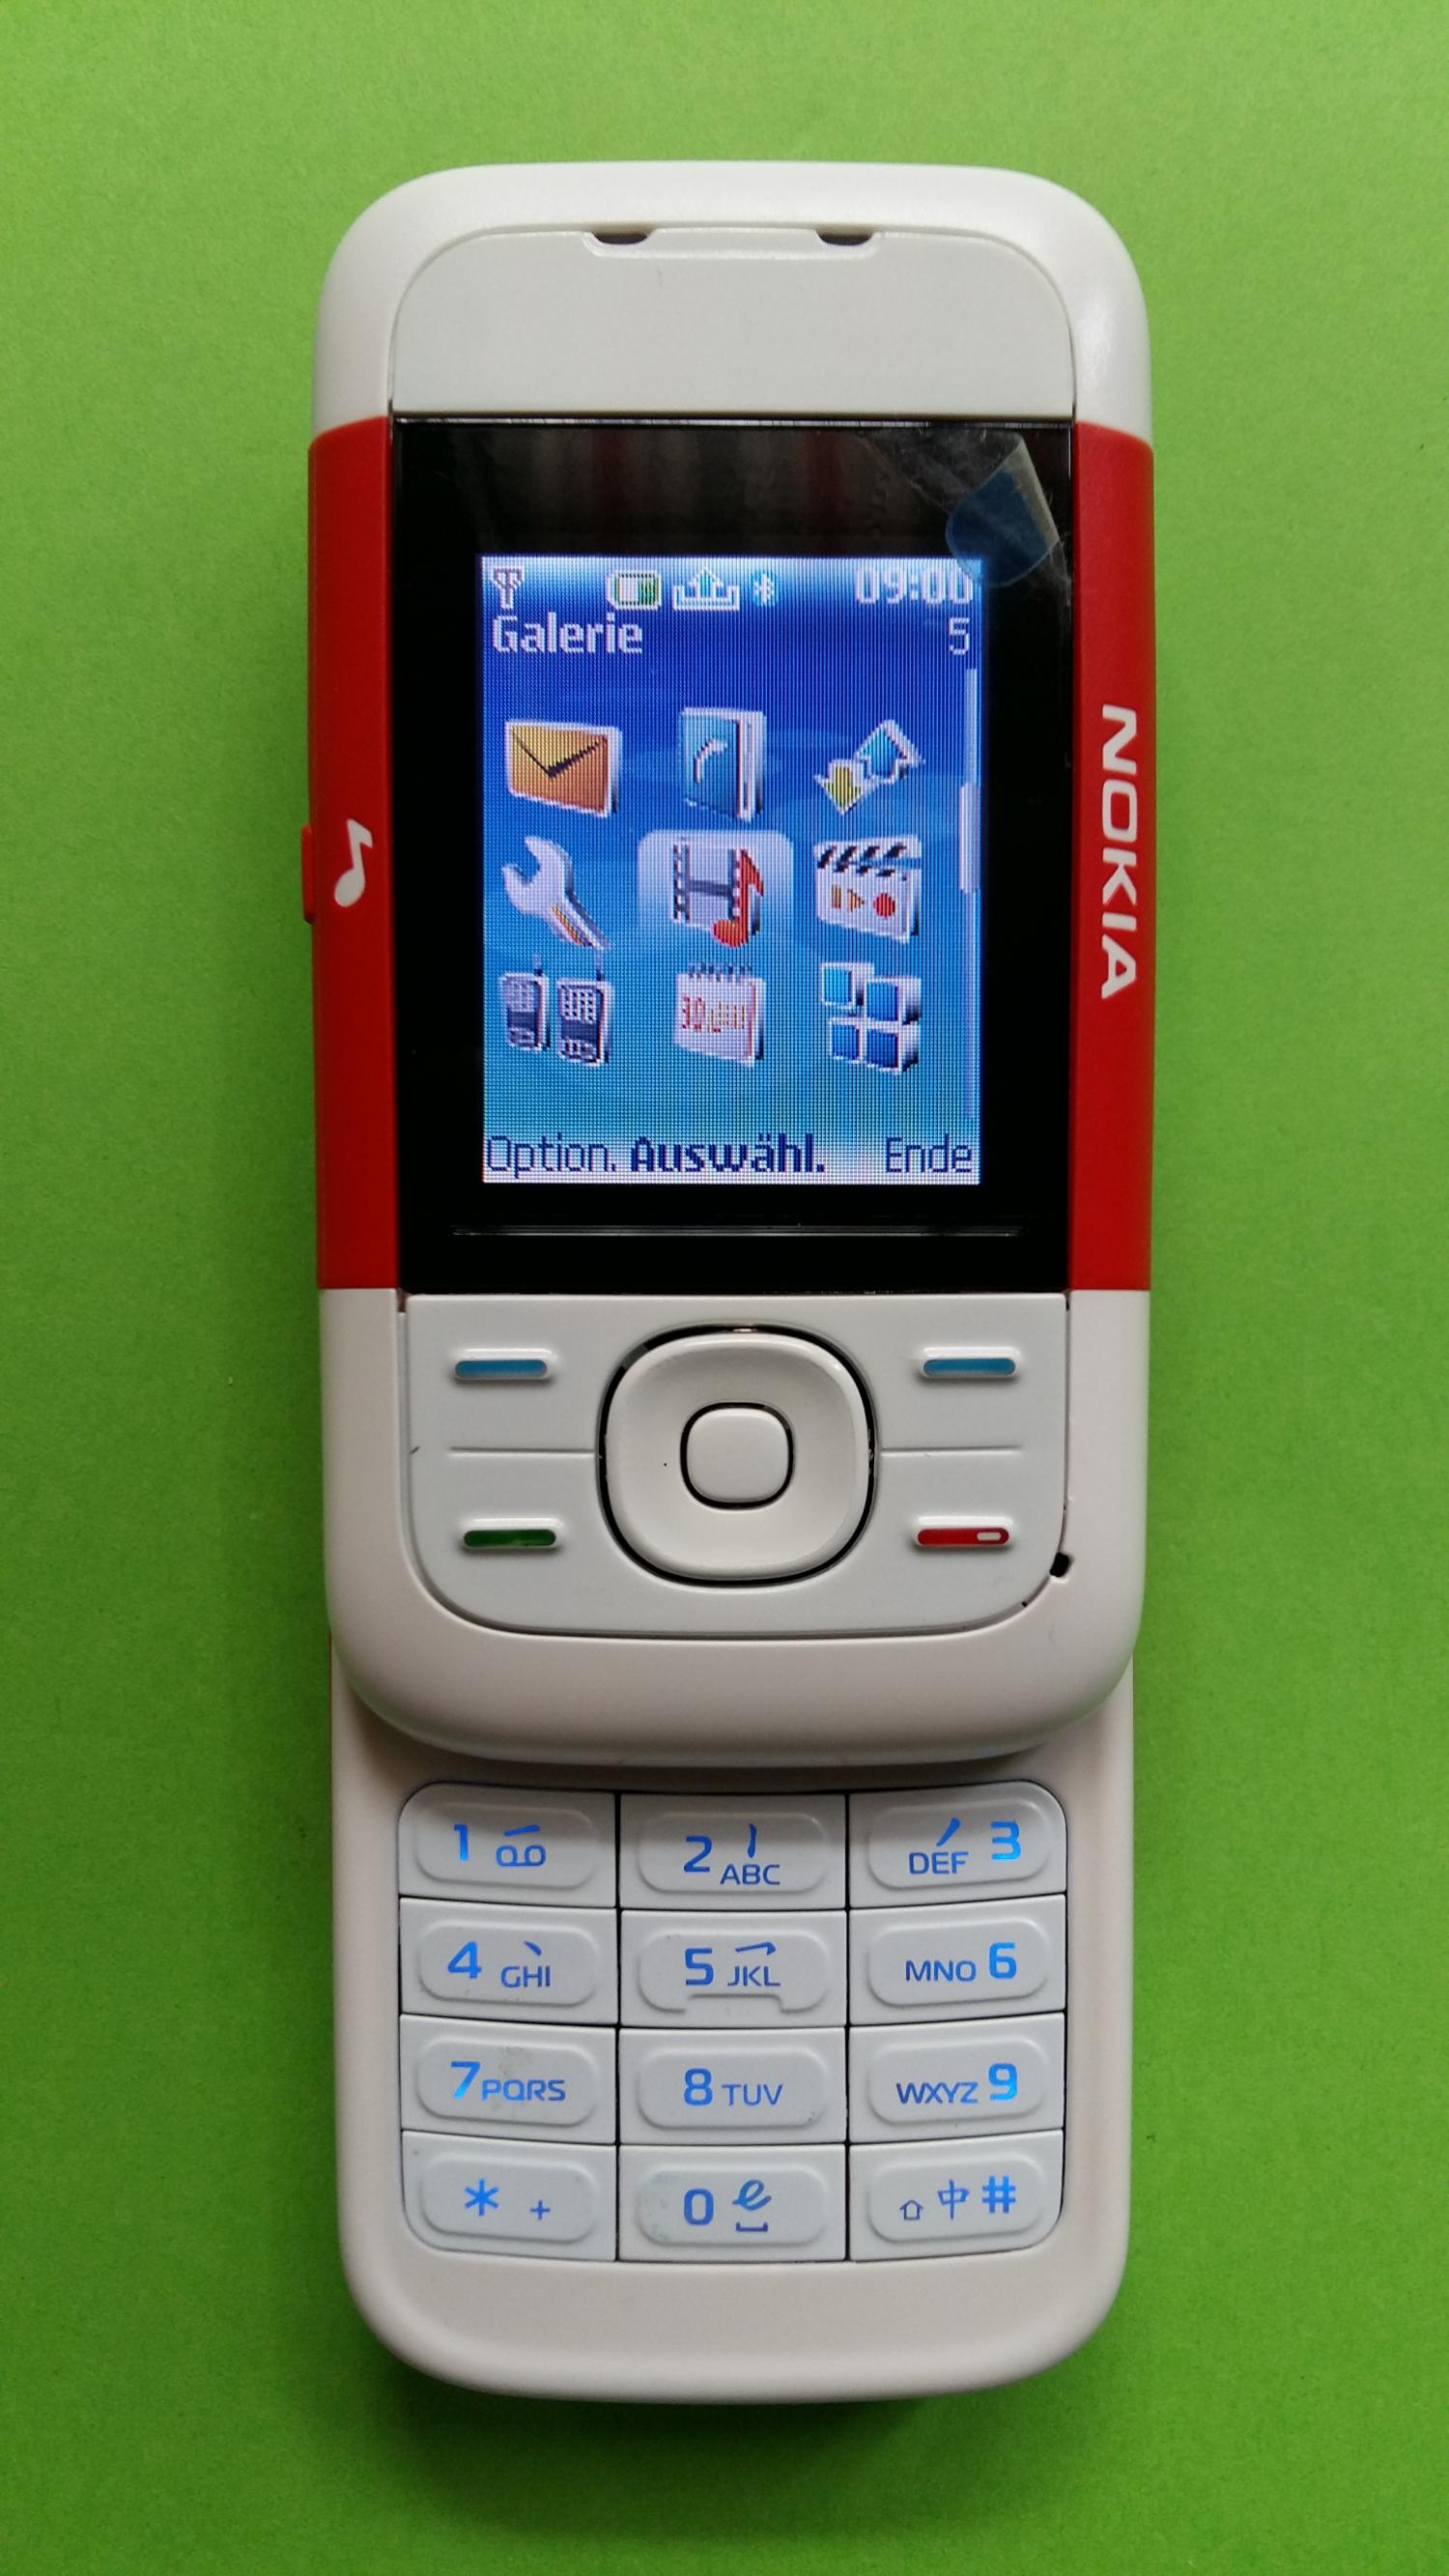 image-7339092-Nokia 5200 (1)2.jpg